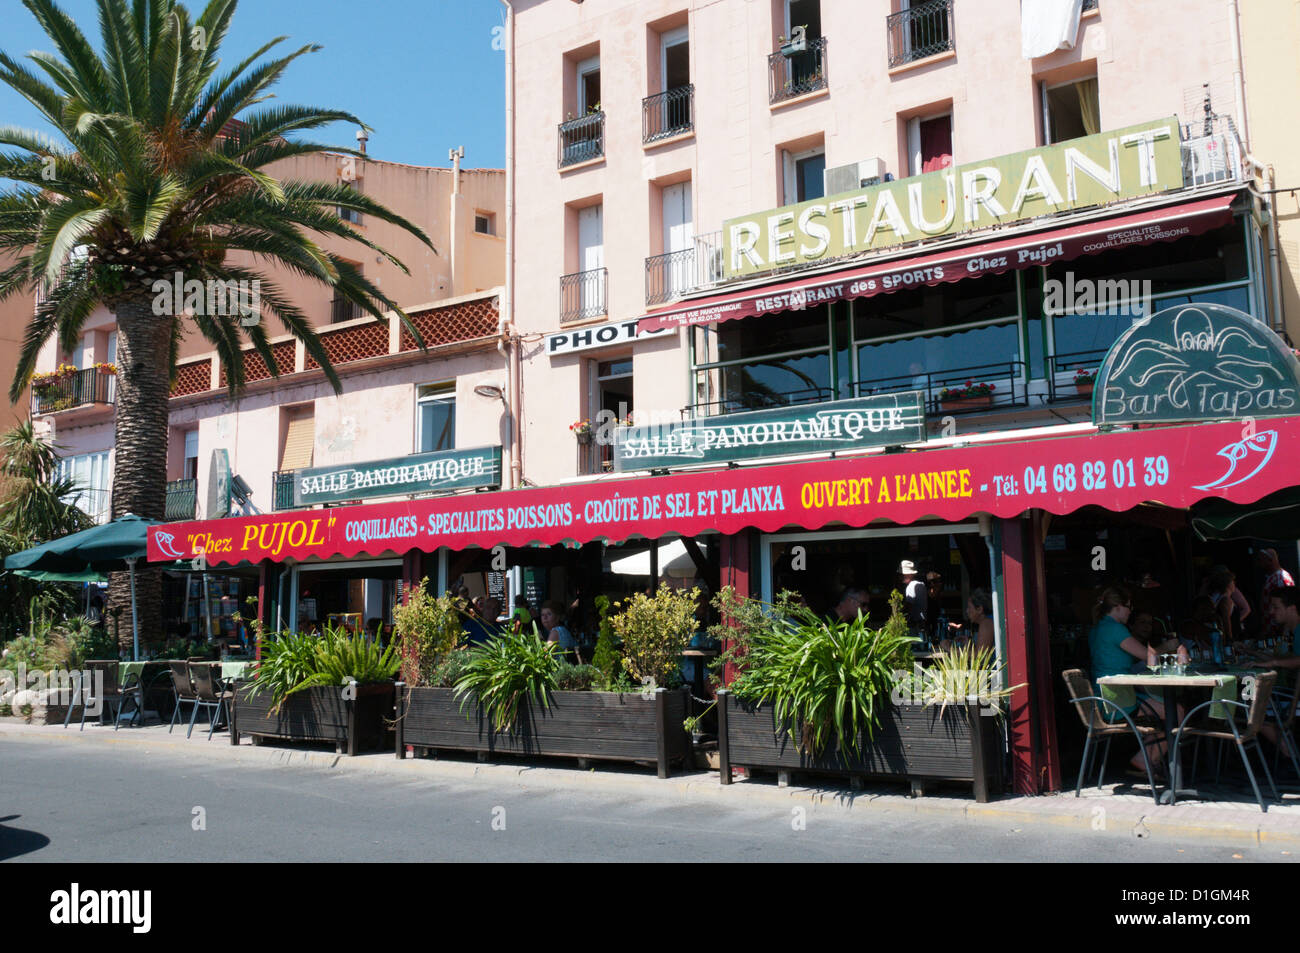 Chez Pujol" restaurant in Port Vendres, France Stock Photo - Alamy